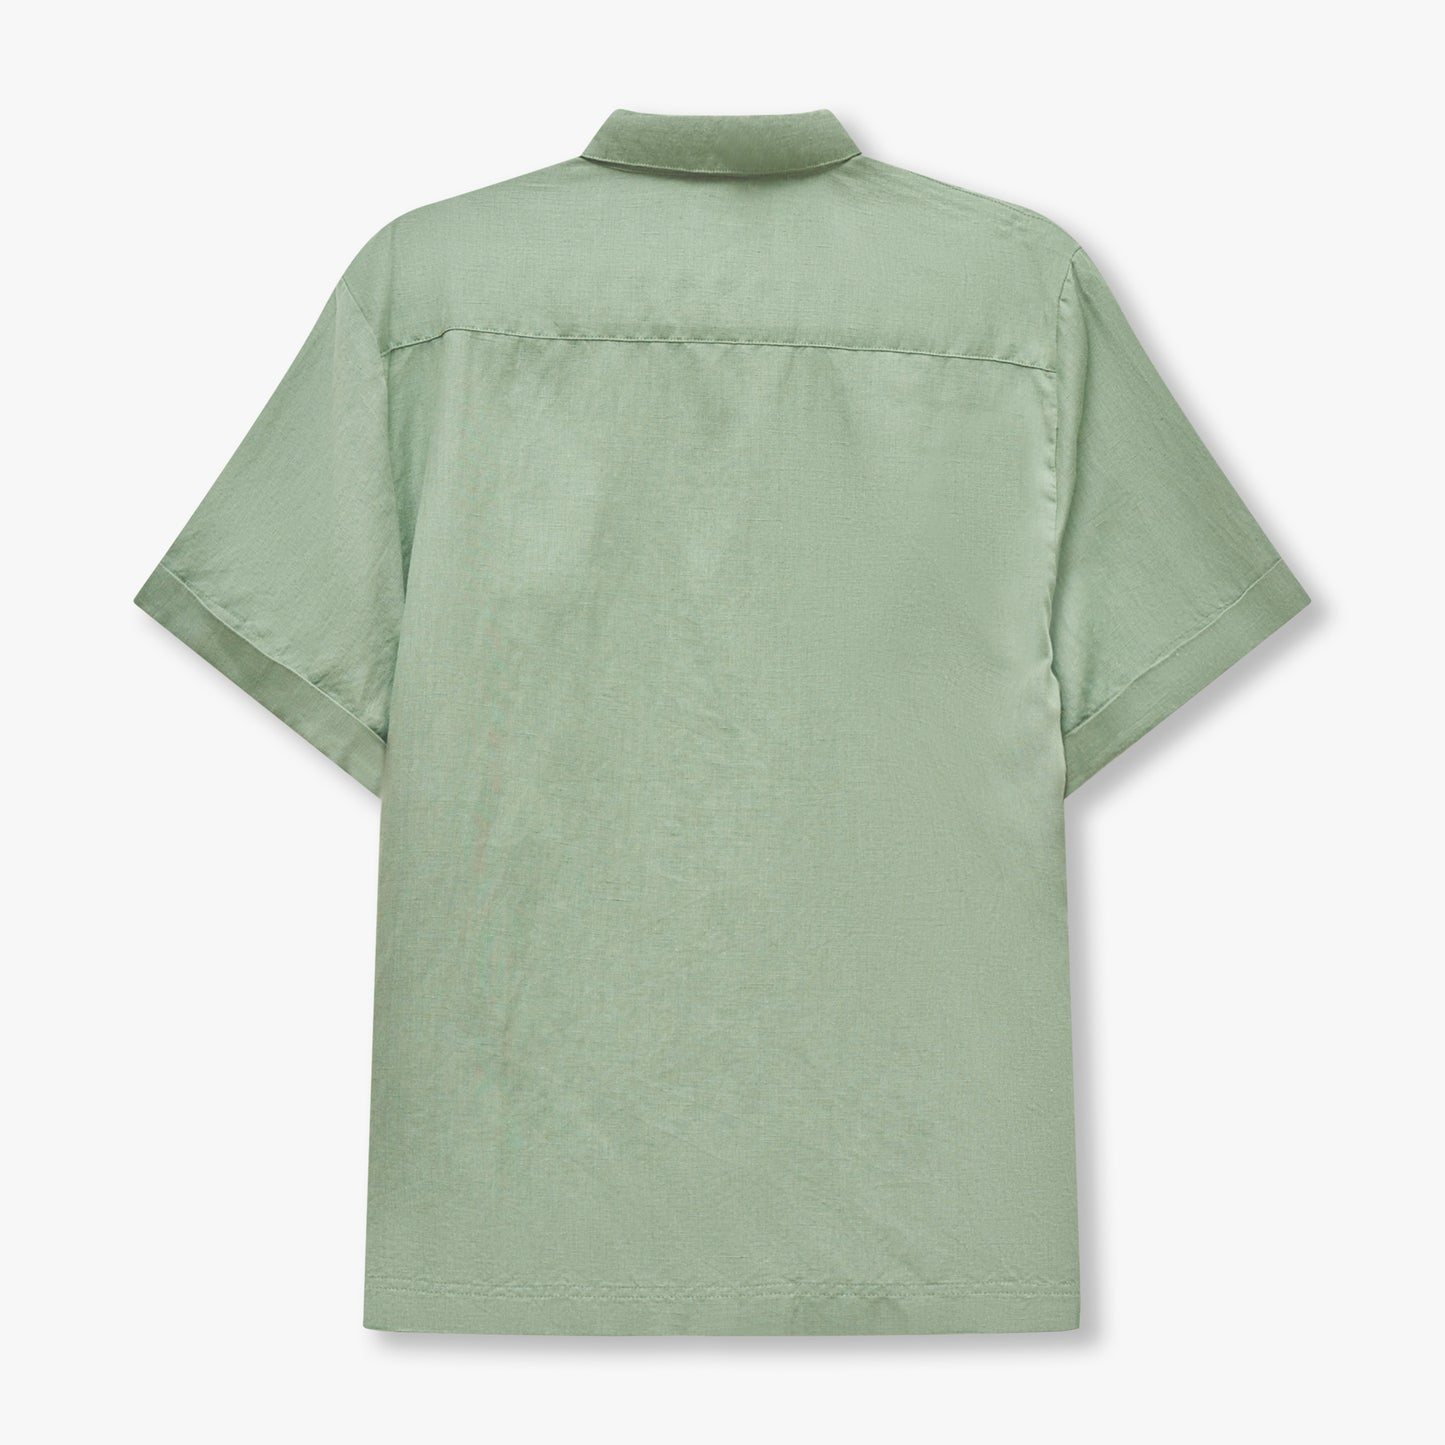 REWEAR Linen Mix Shirt - Hedge Green